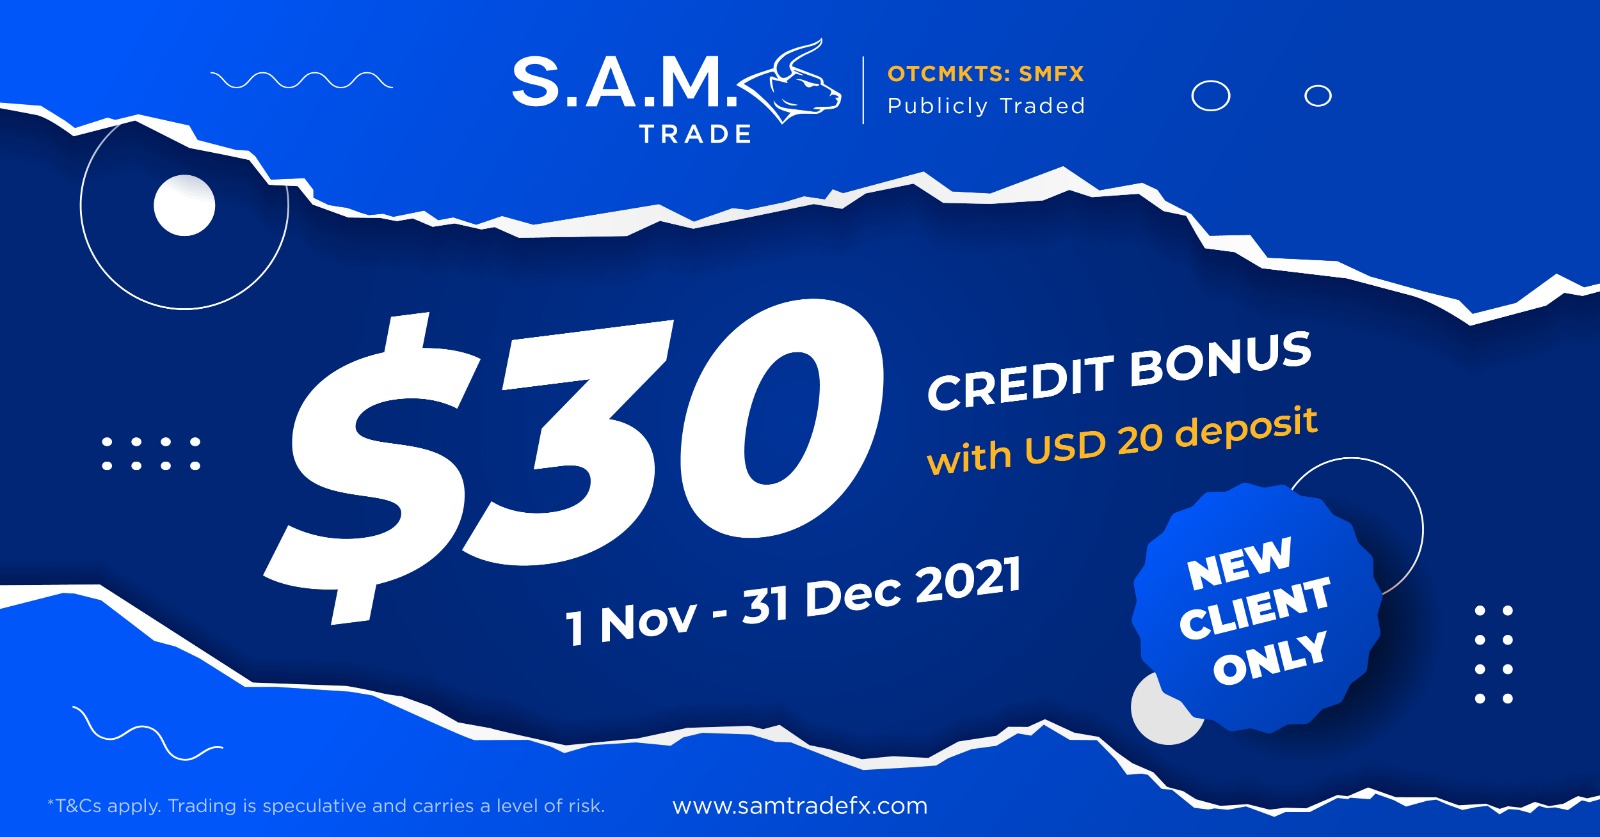 Get Samtrade FX $30 credit bonusGet Samtrade FX $30 credit bonus